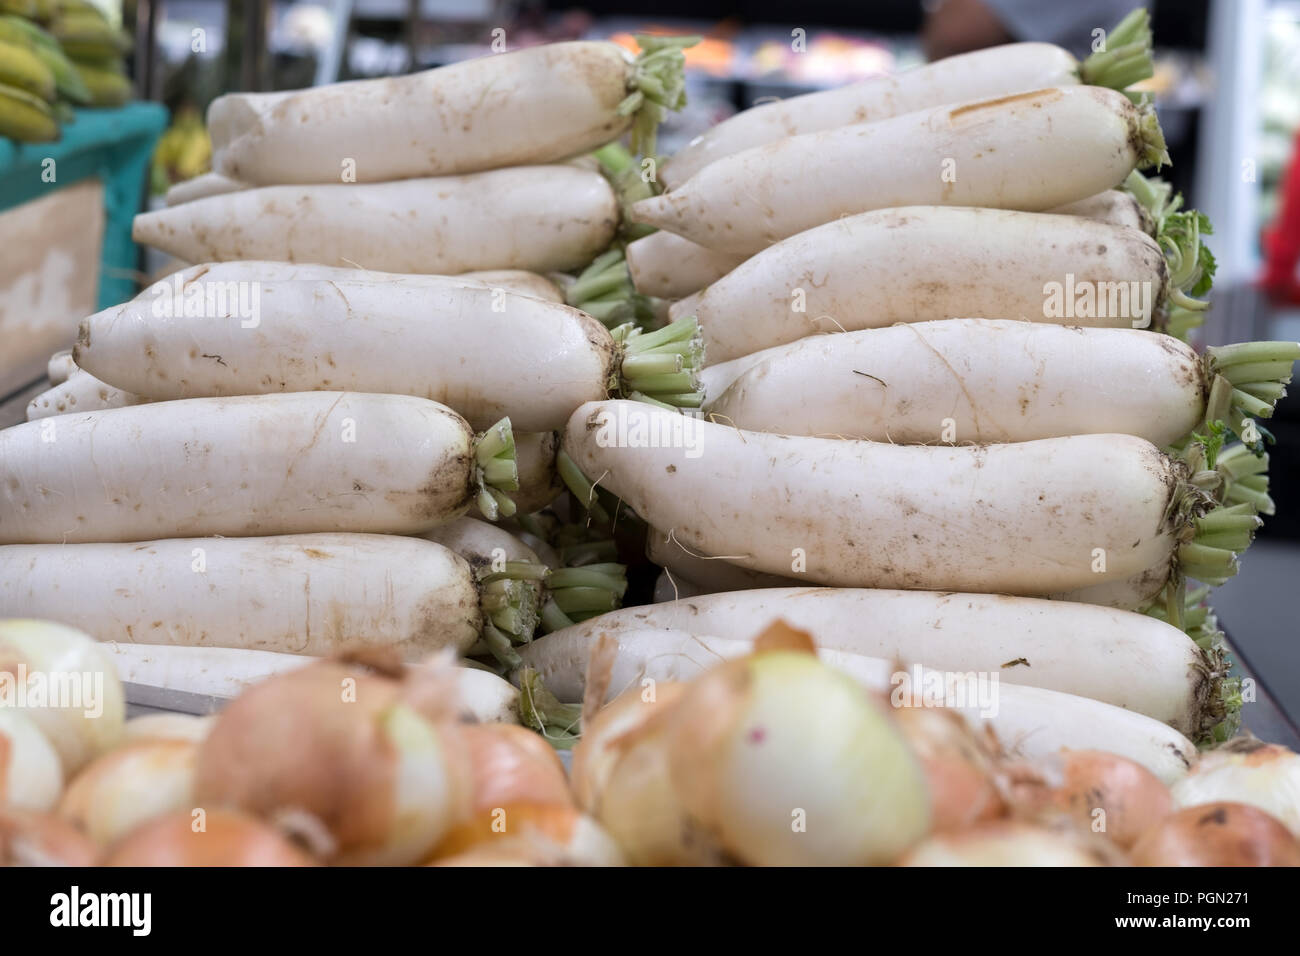 White daikon radishes in the market Stock Photo